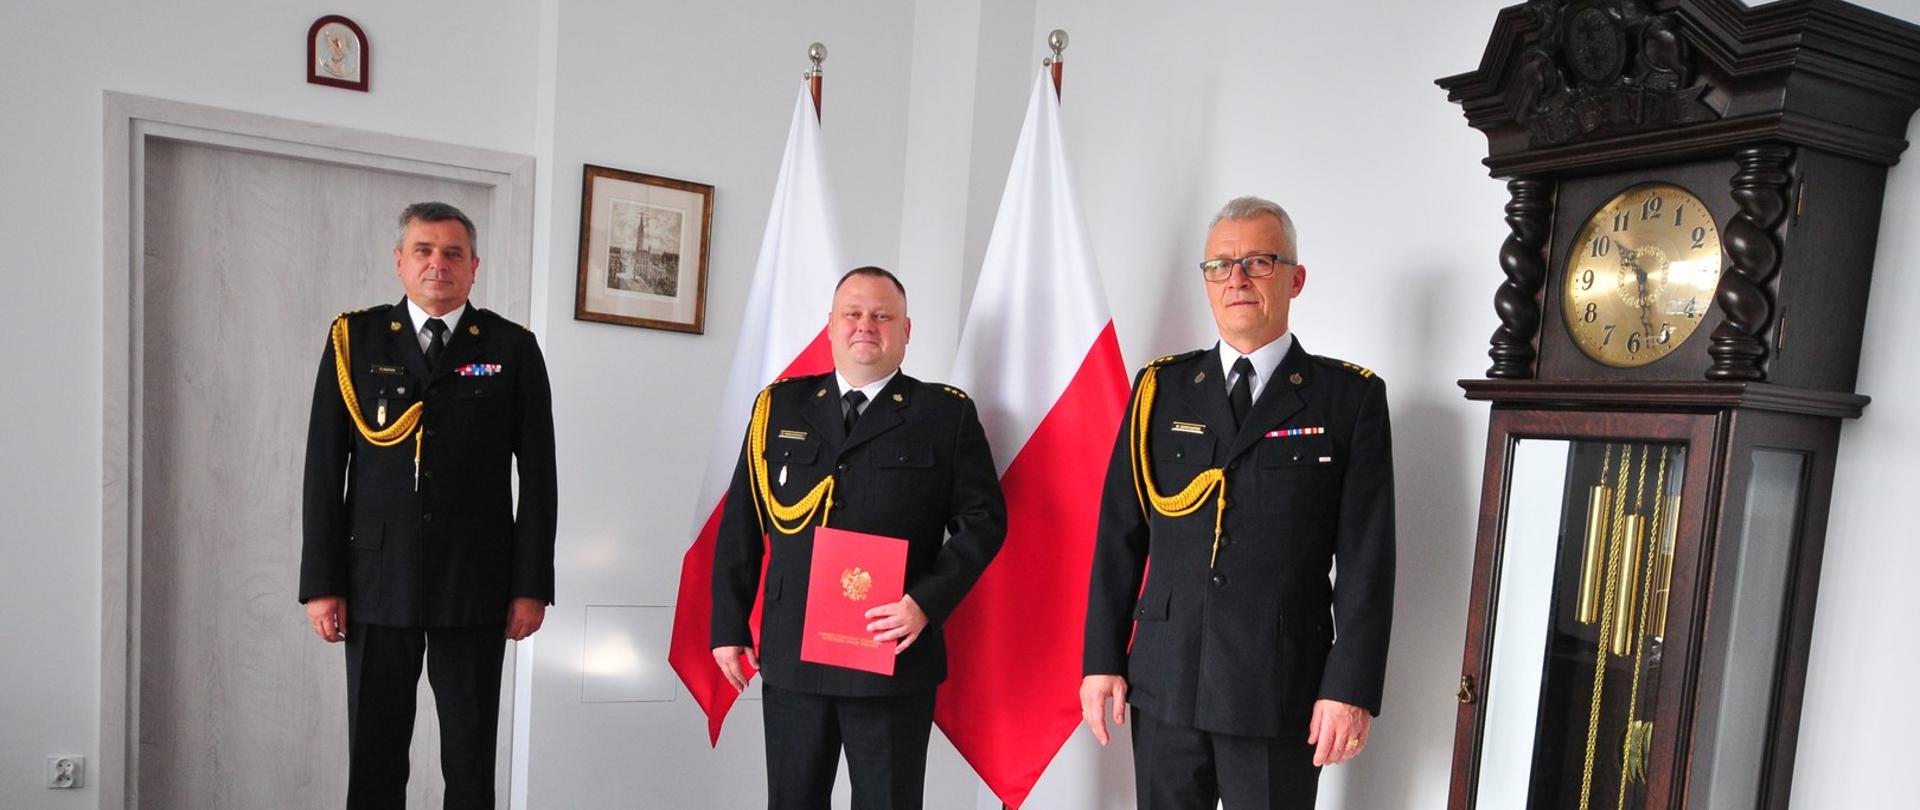 Zdjęcie przedstawia pomorskiego komendanta wojewódzkiego Państwowej Straży Pożarnej, nowego zastępcę komendanta powiatowego PSP wraz z komendantem powiatowym PSP w Malborku , stojących po wręczeniu decyzji.